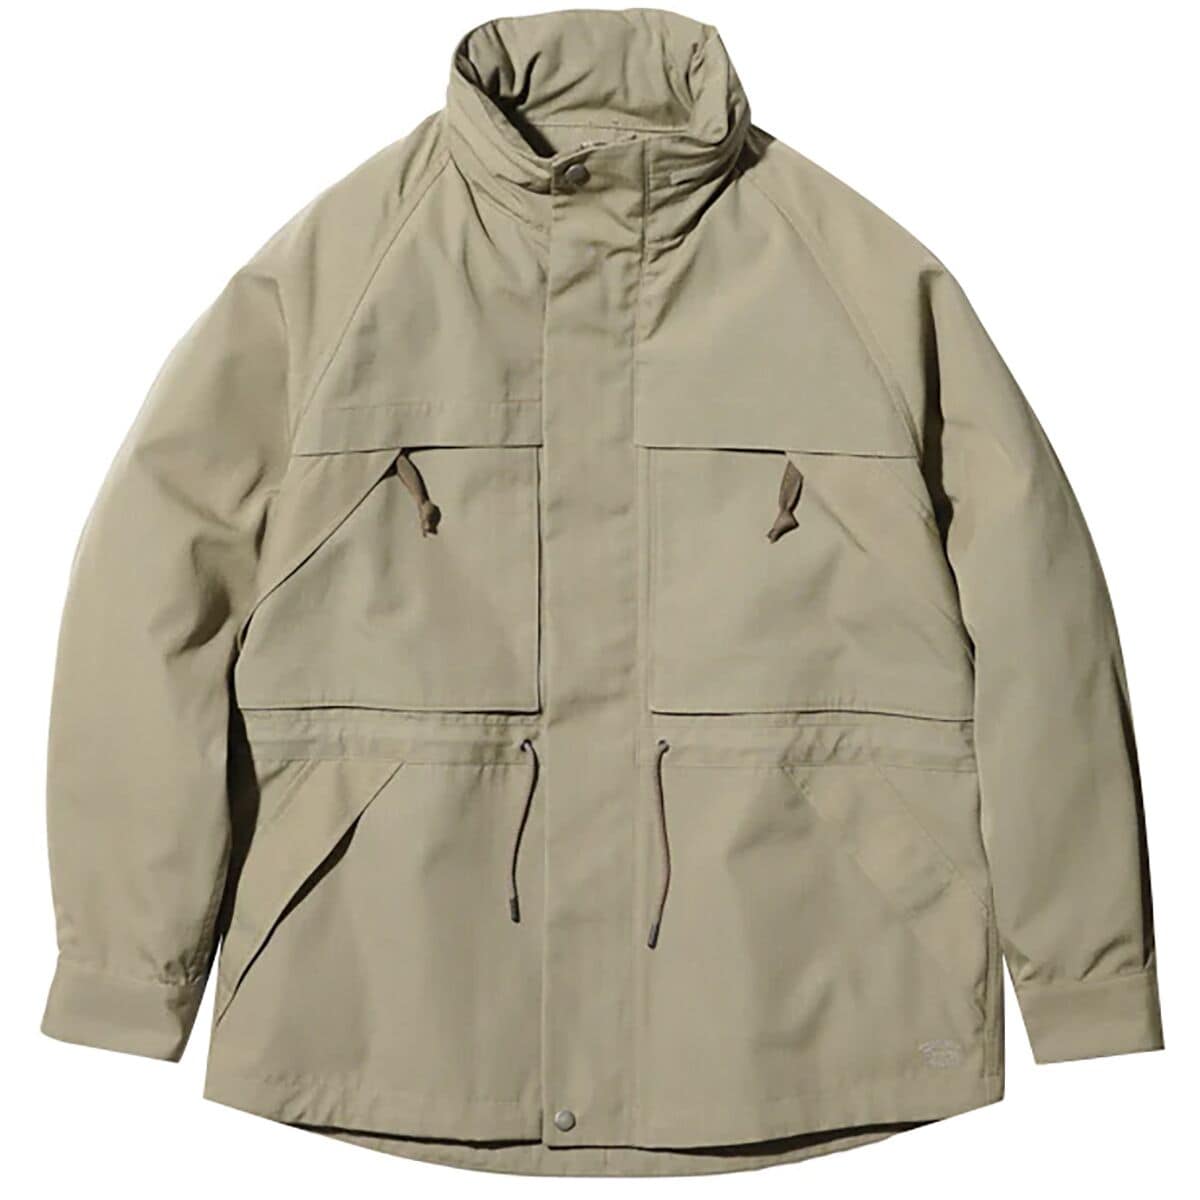 Snow Peak Takibi Mountain Jacket - Men's - Clothing